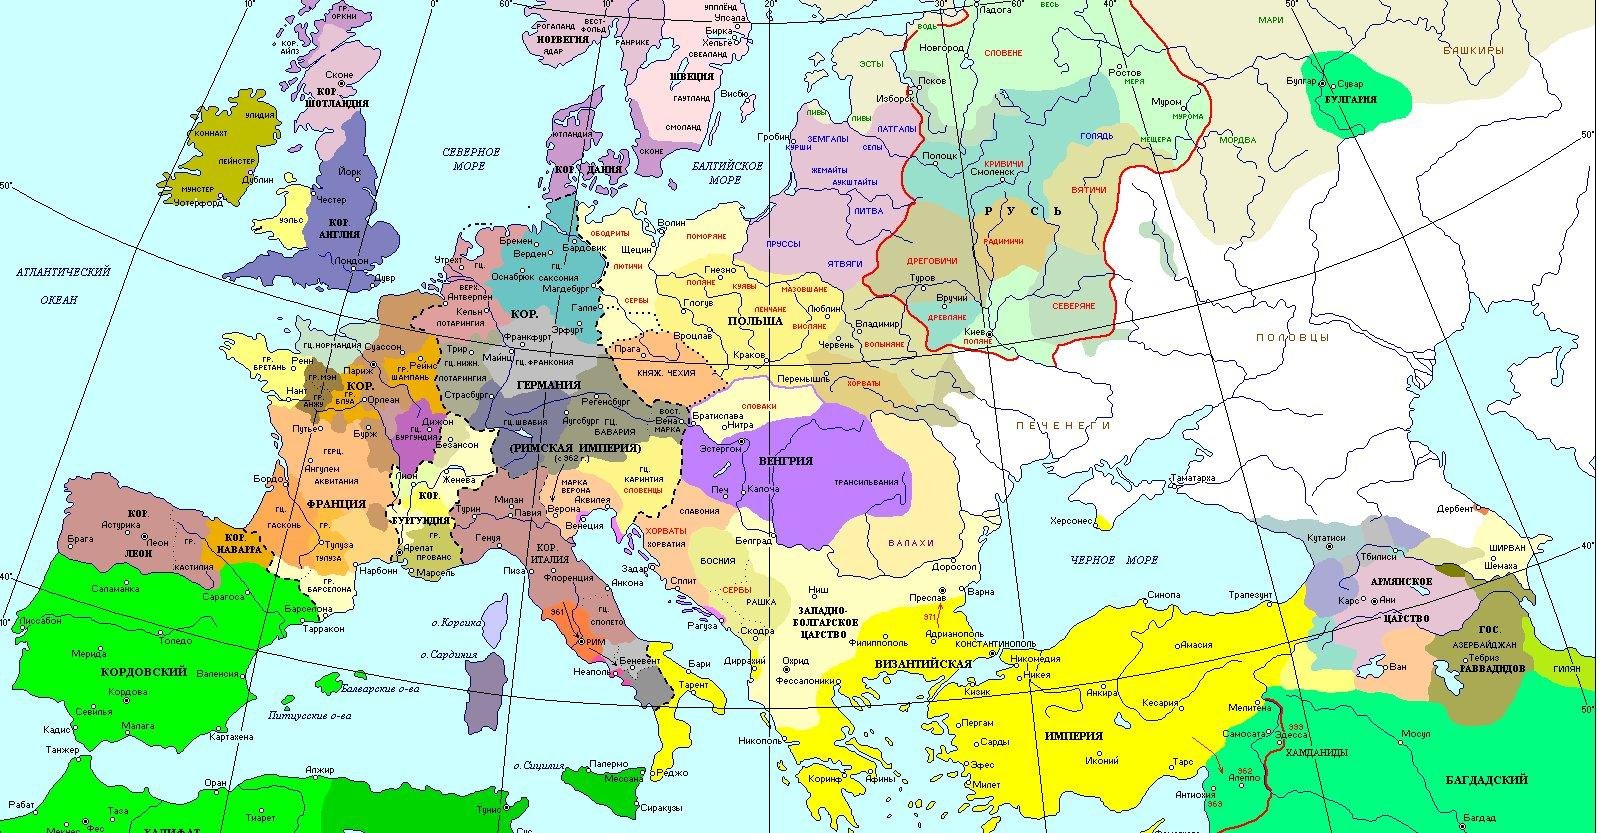 Изменения на политической карте европы. Карта Европы в средние века 10 век. Карта Европы 11 века. Восточная Европа в раннее средневековье карта. Европа в раннее средневековье карта.